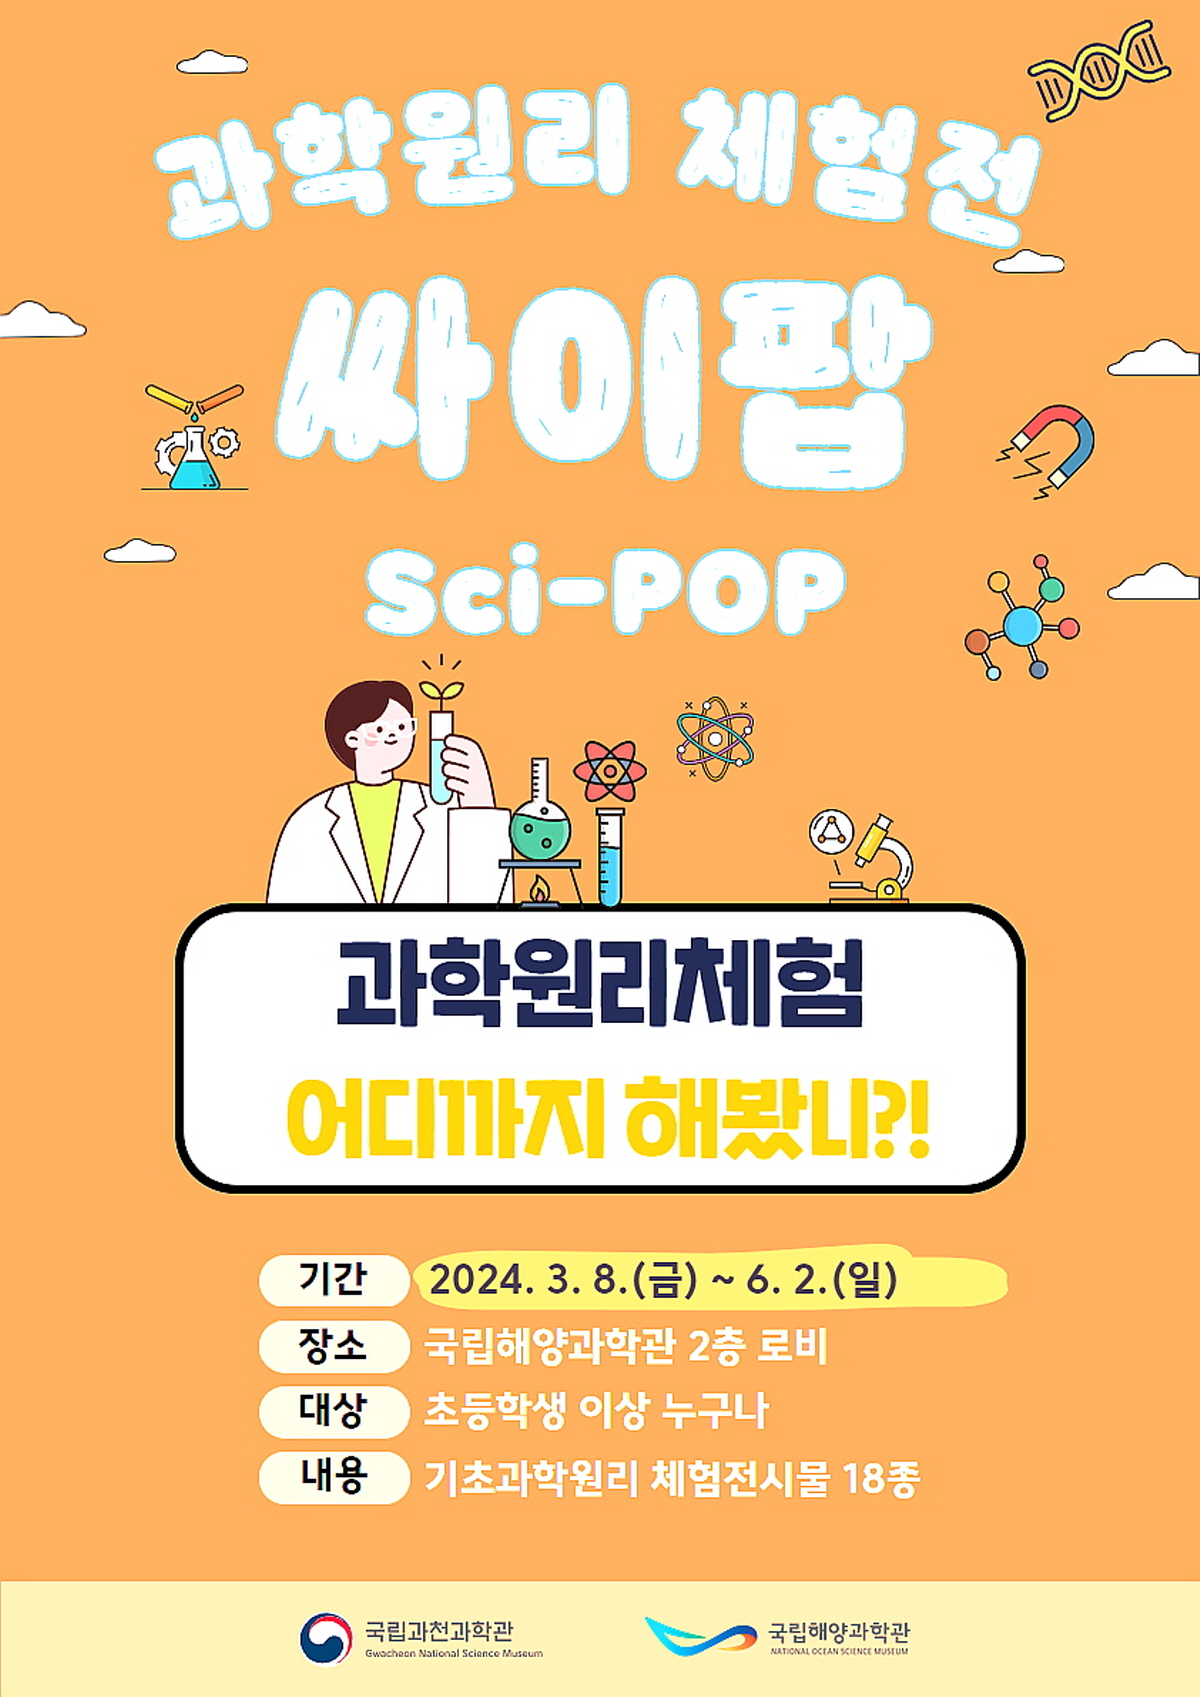 국립해양과학관, 과학원리 체험전‘싸이팝(Sci-POP) ’개최